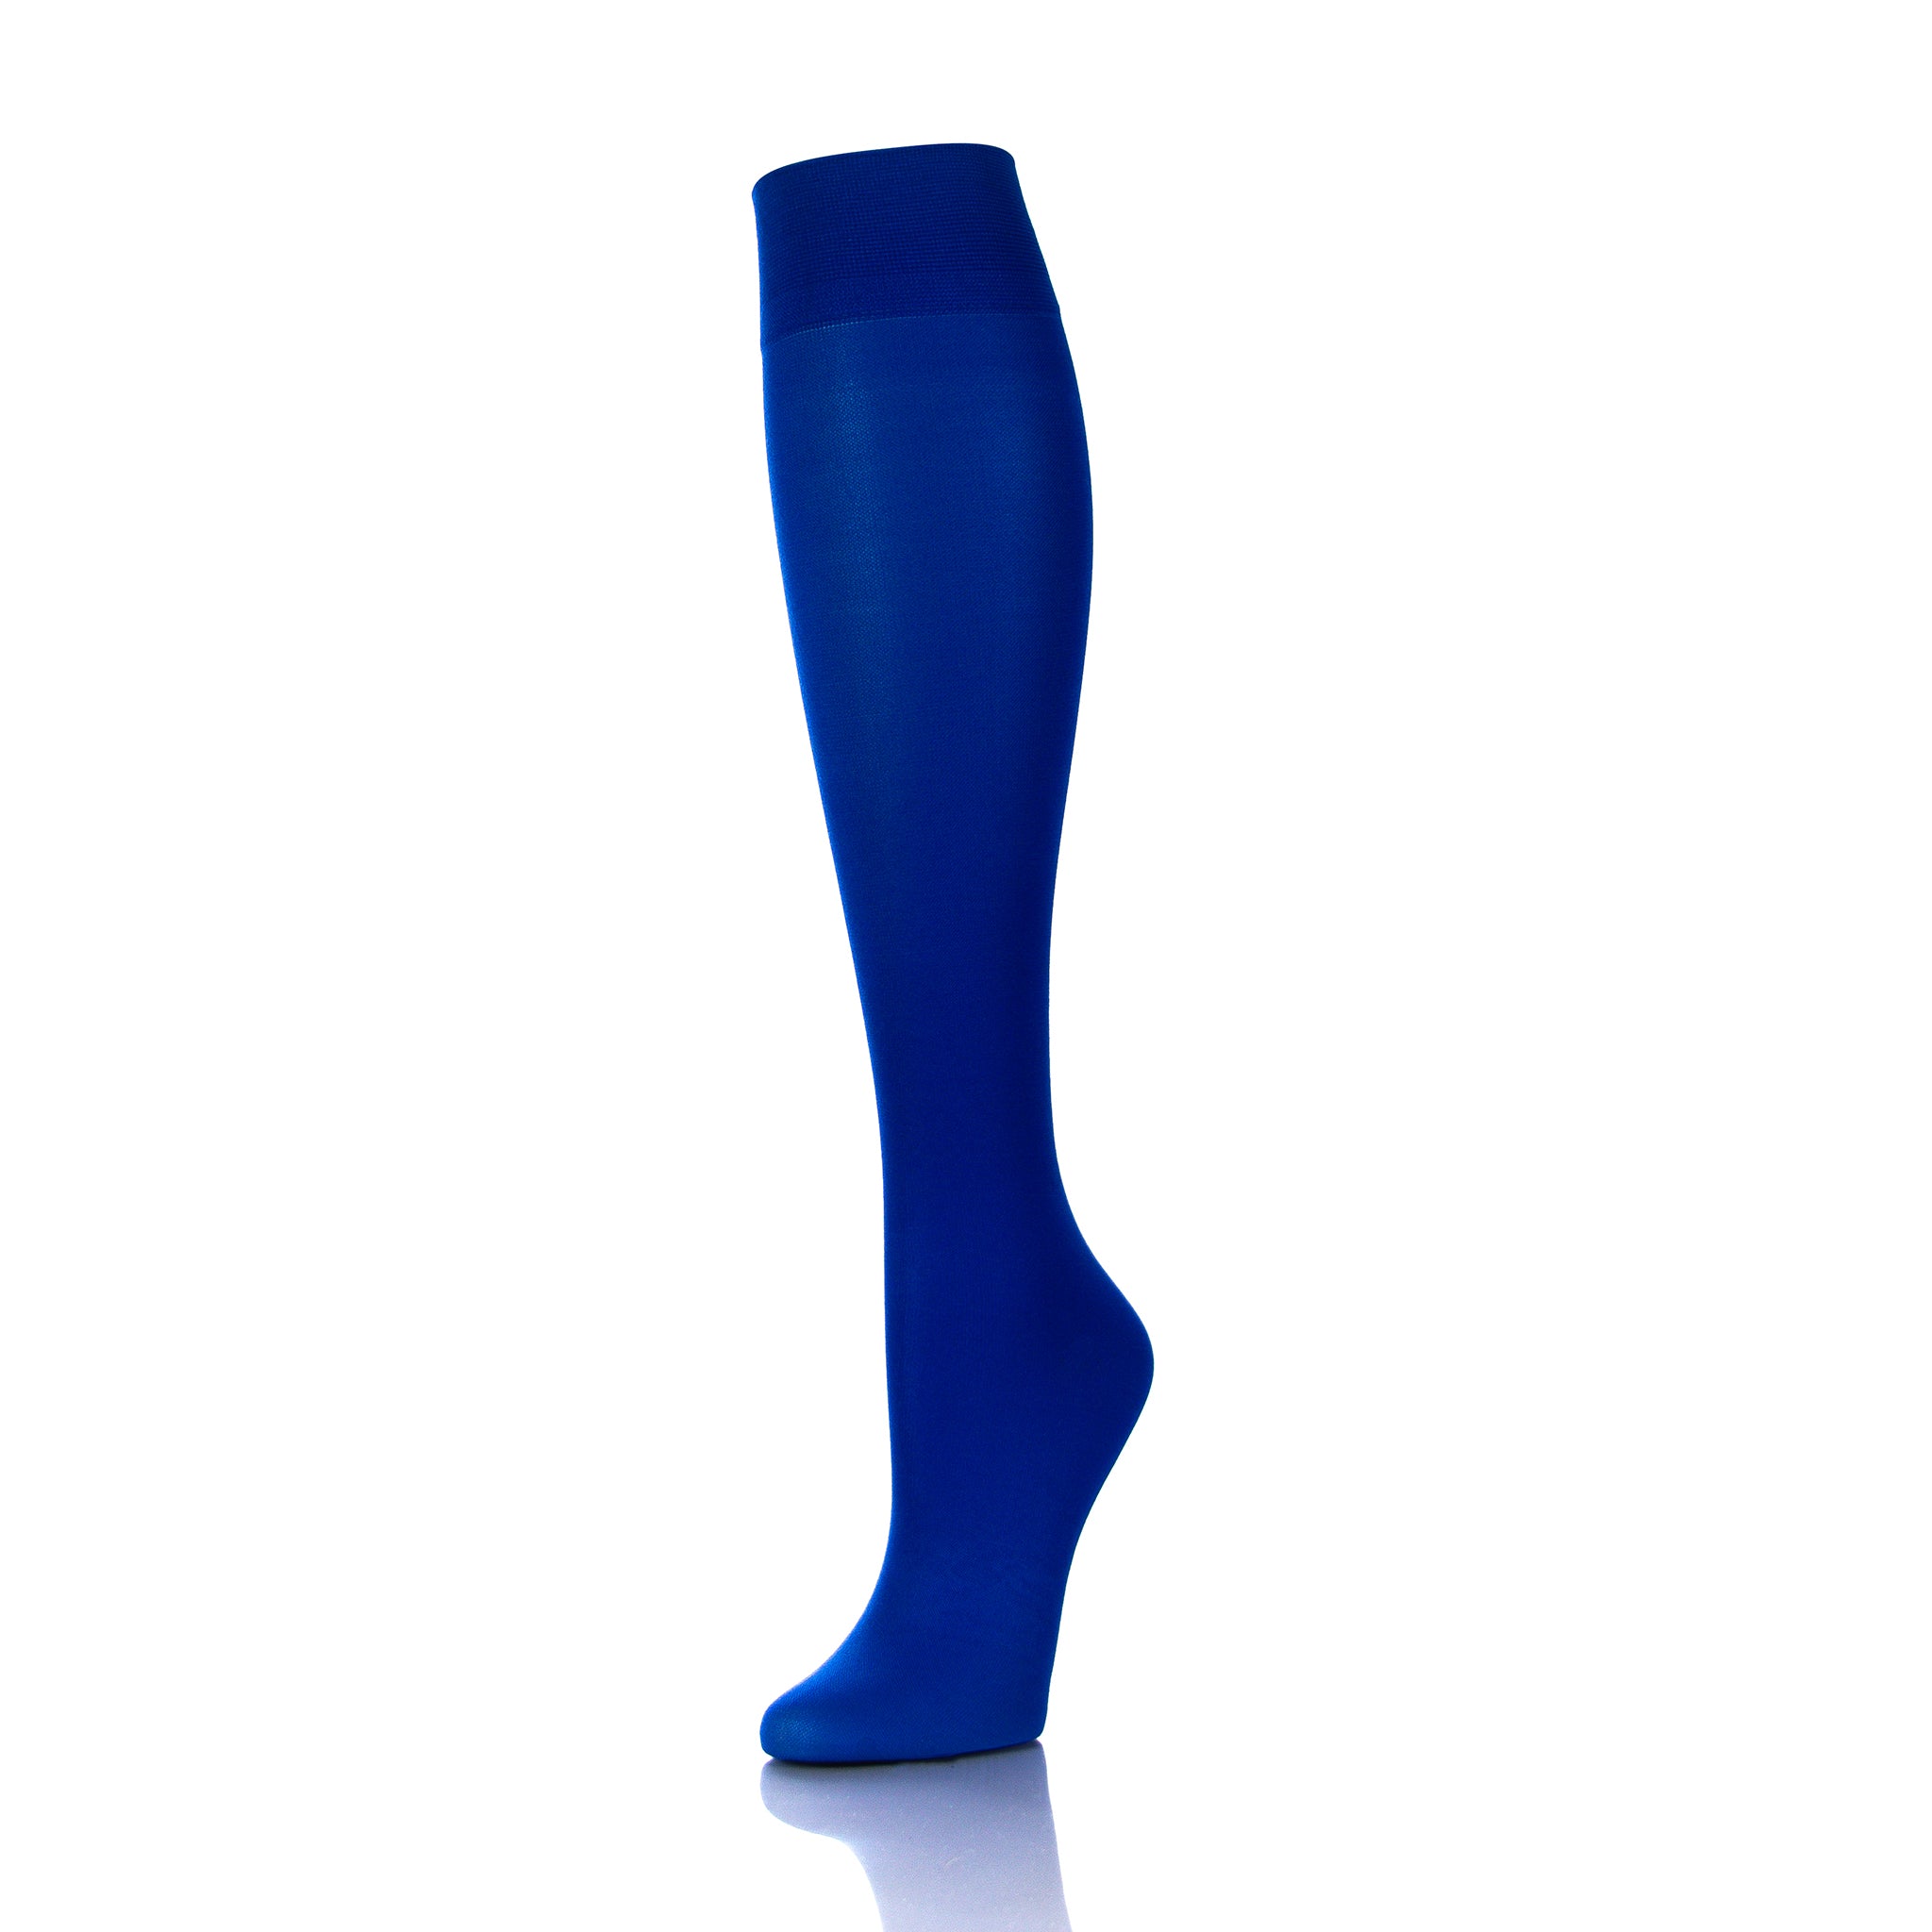 Support Socks For Women  - Royal Blue  - Doctor Brace Softmedi - Diagonal View Of Outside Leg